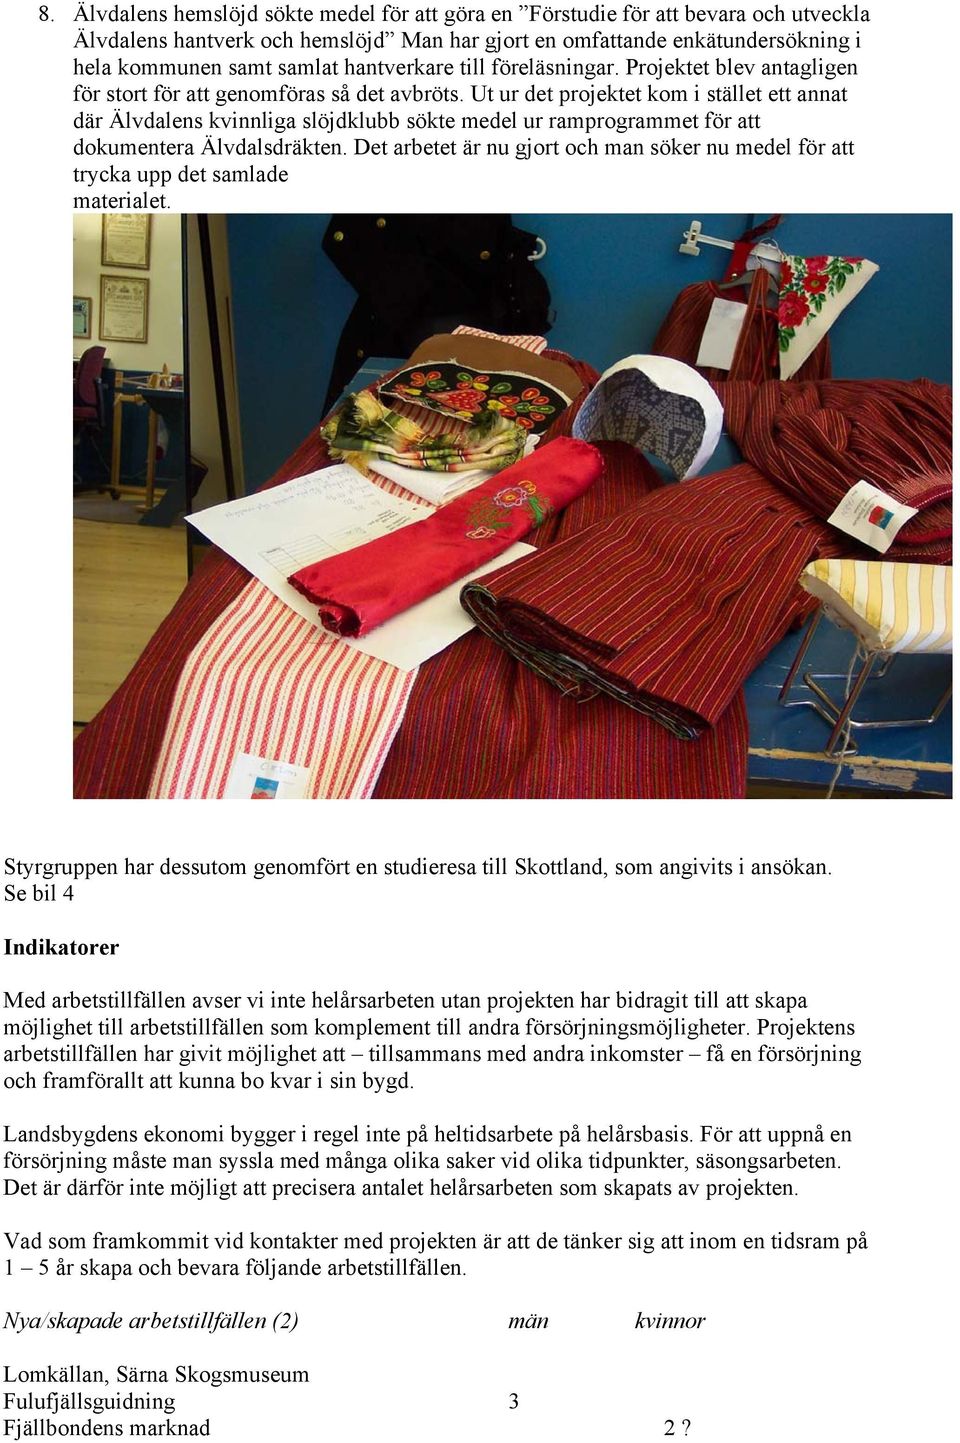 Ut ur det projektet kom i stället ett annat där Älvdalens kvinnliga slöjdklubb sökte medel ur ramprogrammet för att dokumentera Älvdalsdräkten.